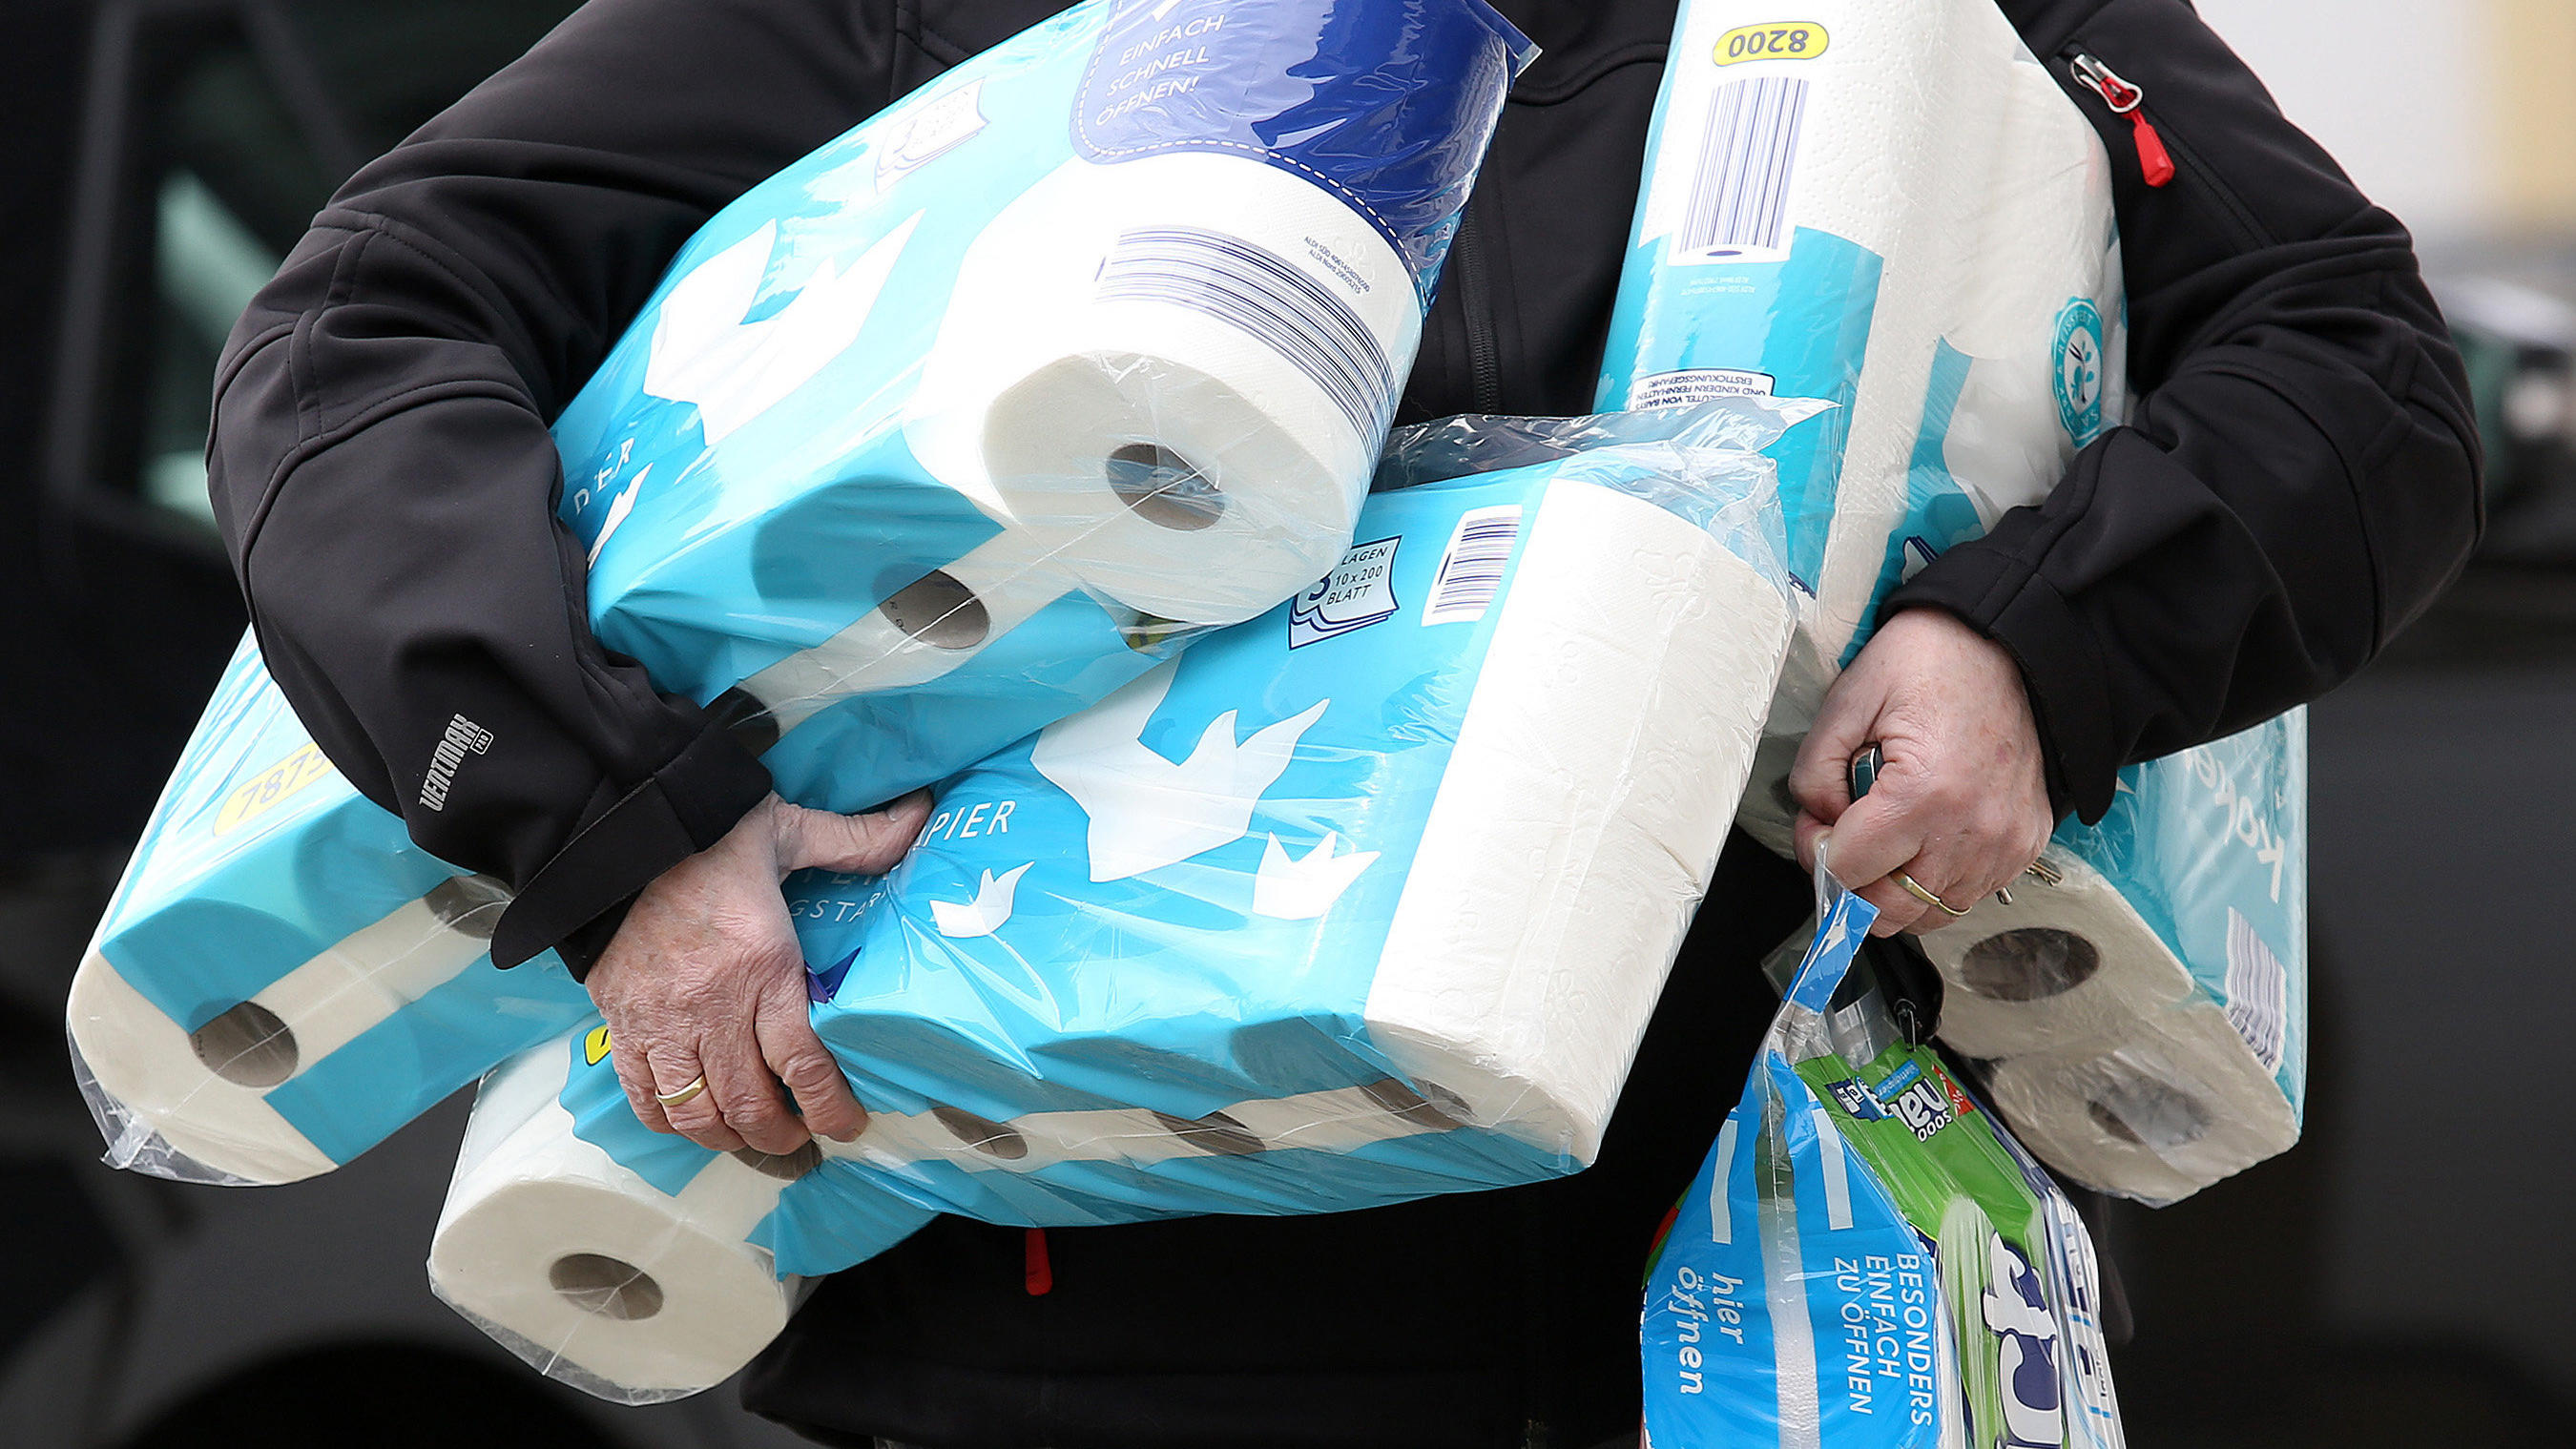 ARCHIV - 18.03.2020, Nordrhein-Westfalen, Siegen: Ein Mann trägt eingekauftes Toilettenpapier und Küchenrollen aus einem Supermarkt. Auch wenn das neuartige Coronavirus beängstigend ist, haben viele Menschen ihren Humor noch nicht verloren. So leer, 